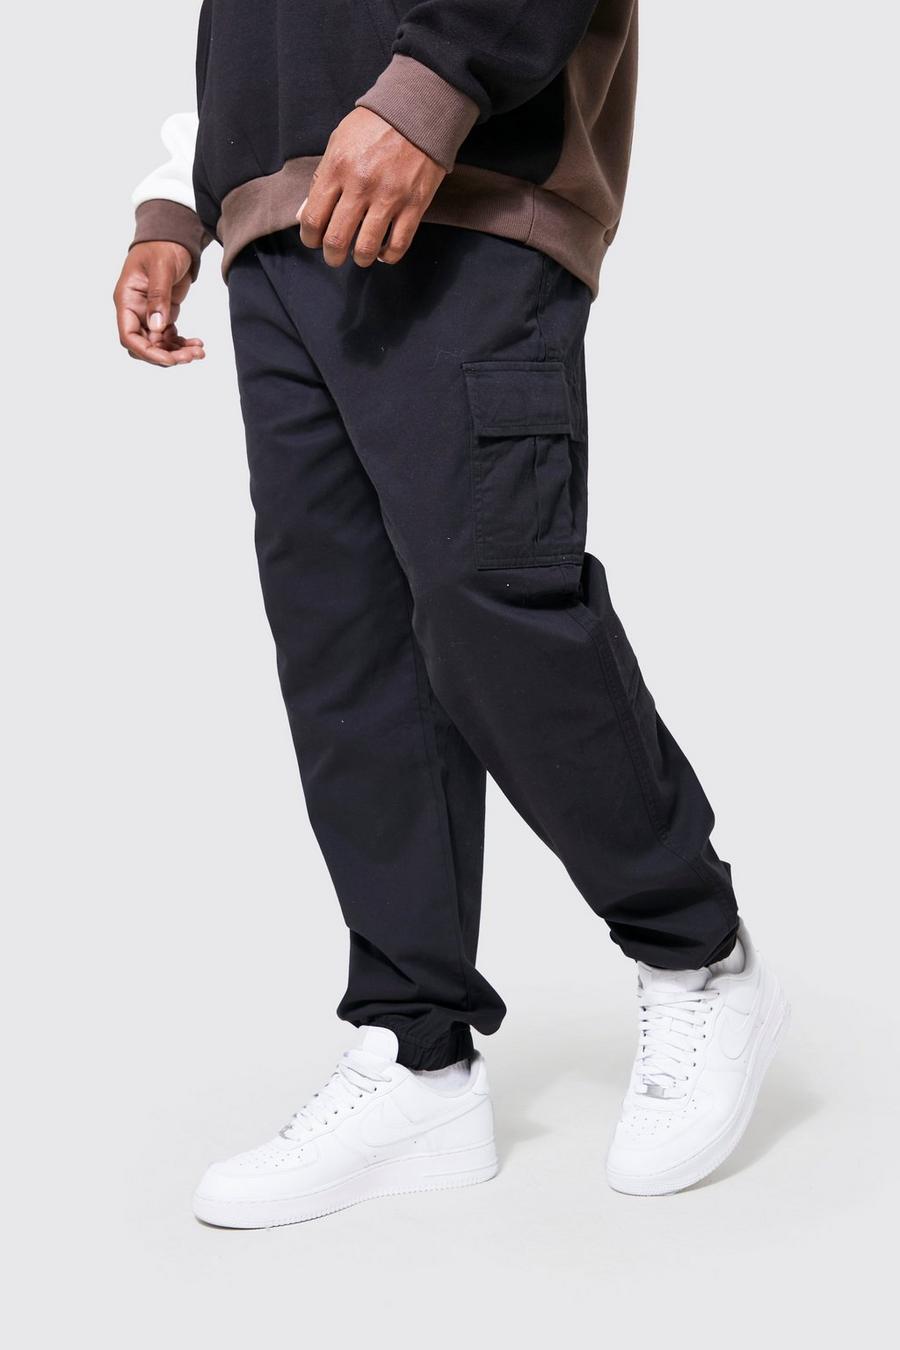 Pantalón Plus cargo ajustado, Black